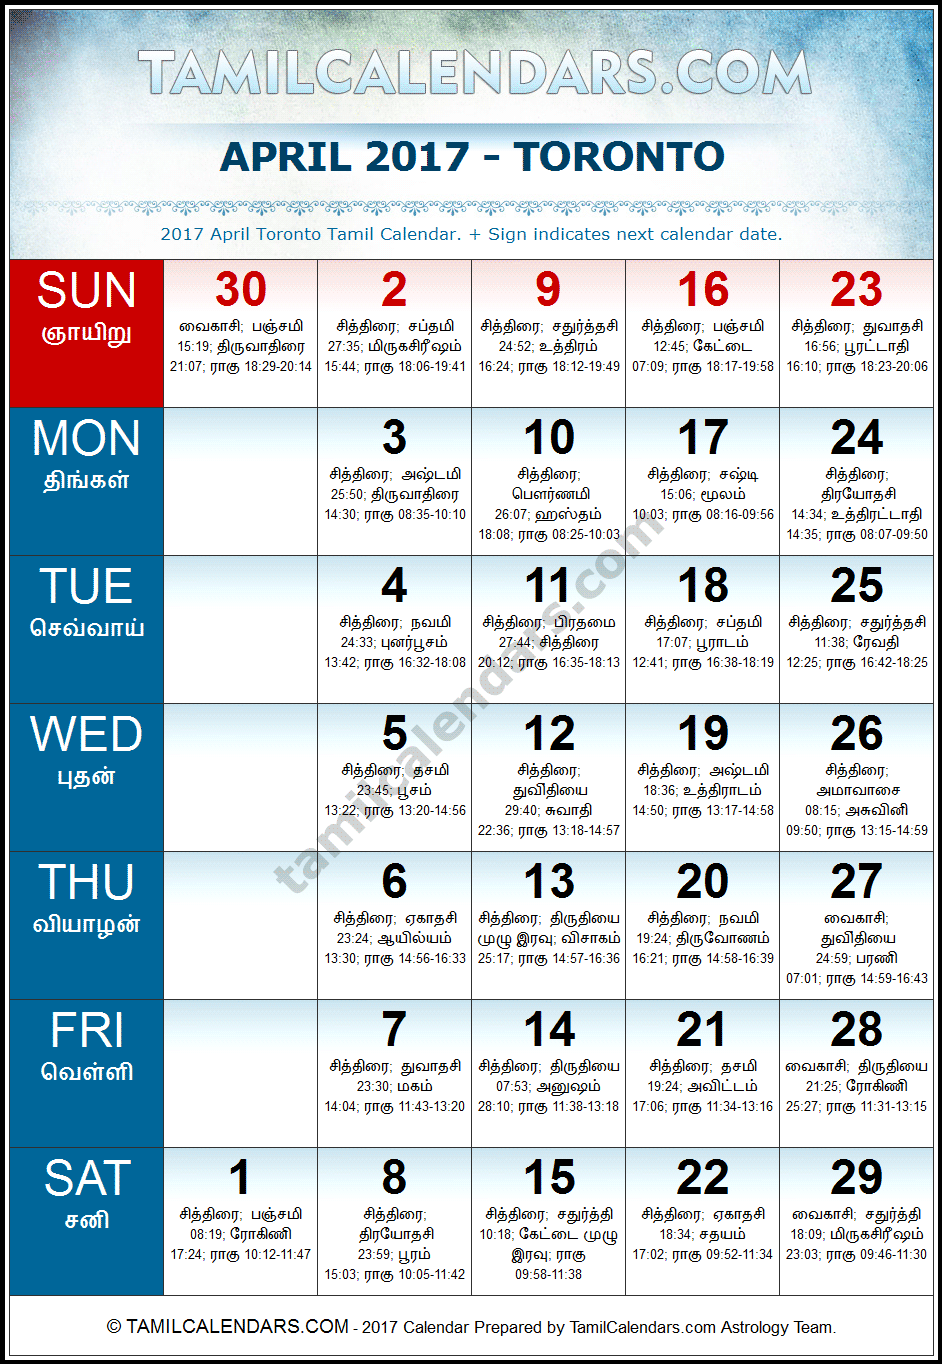 April 2017 Tamil Calendar for Toronto, Canada